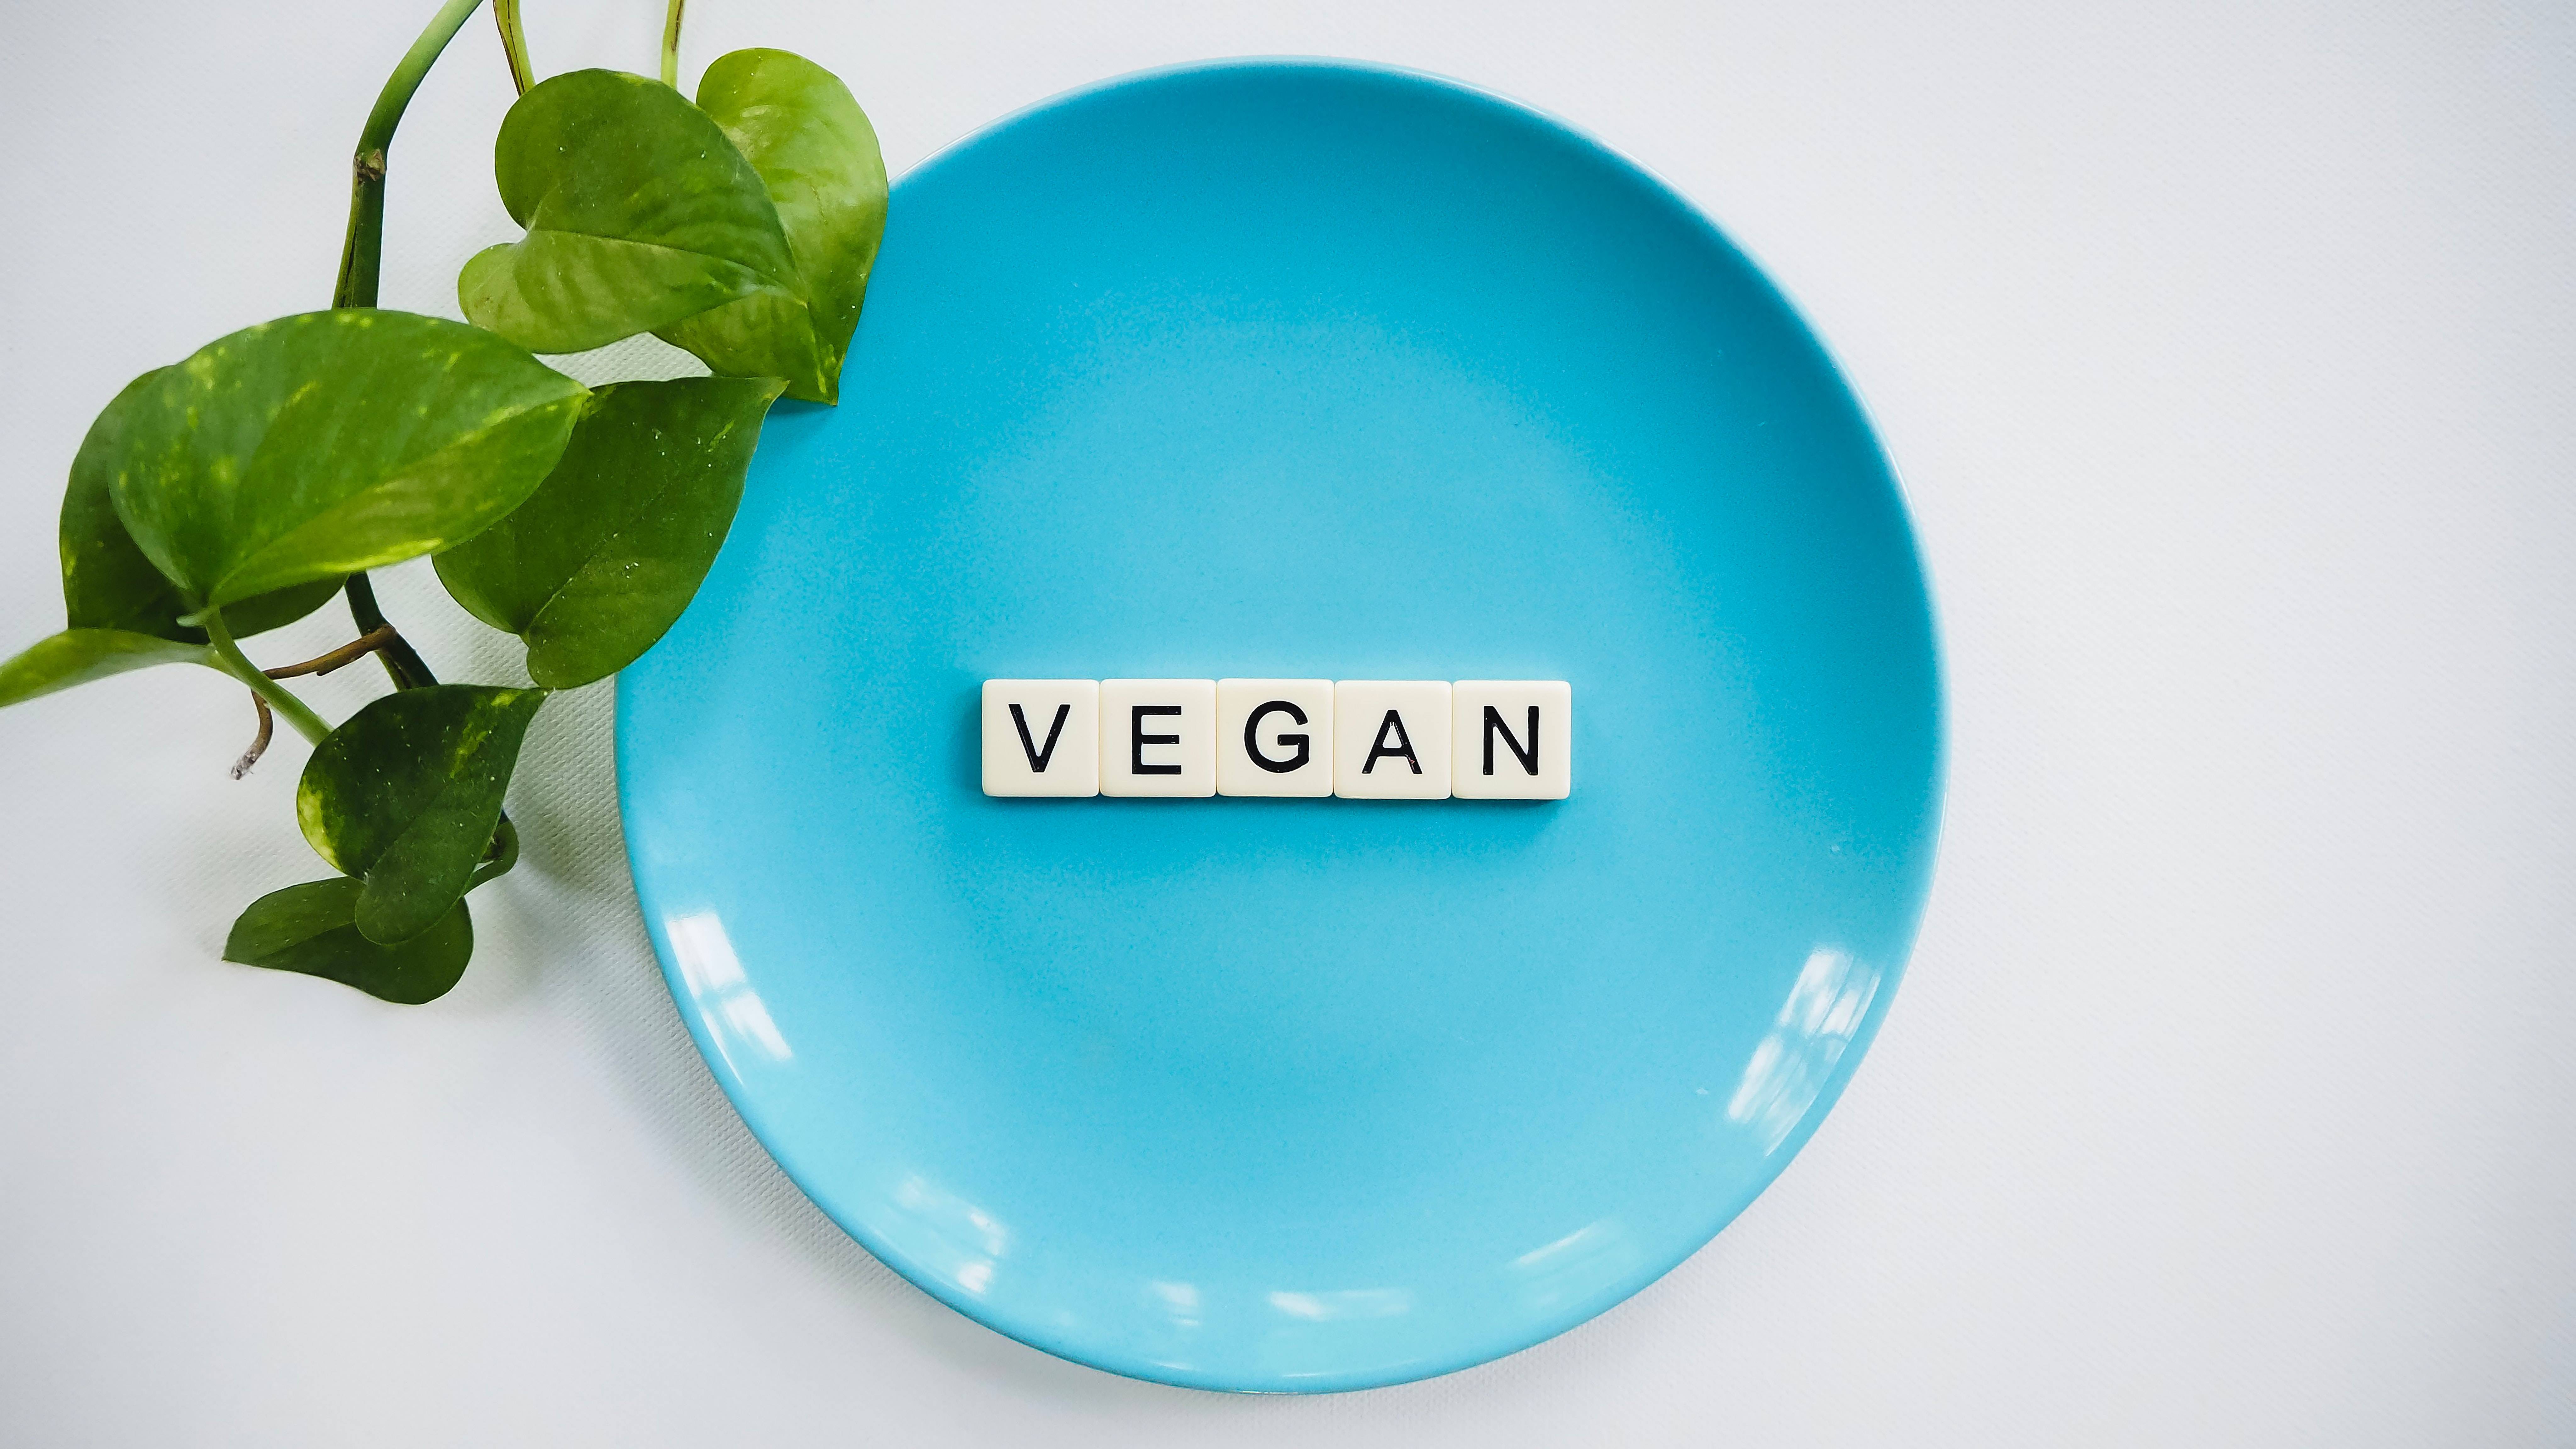 piatto con scritta vegan